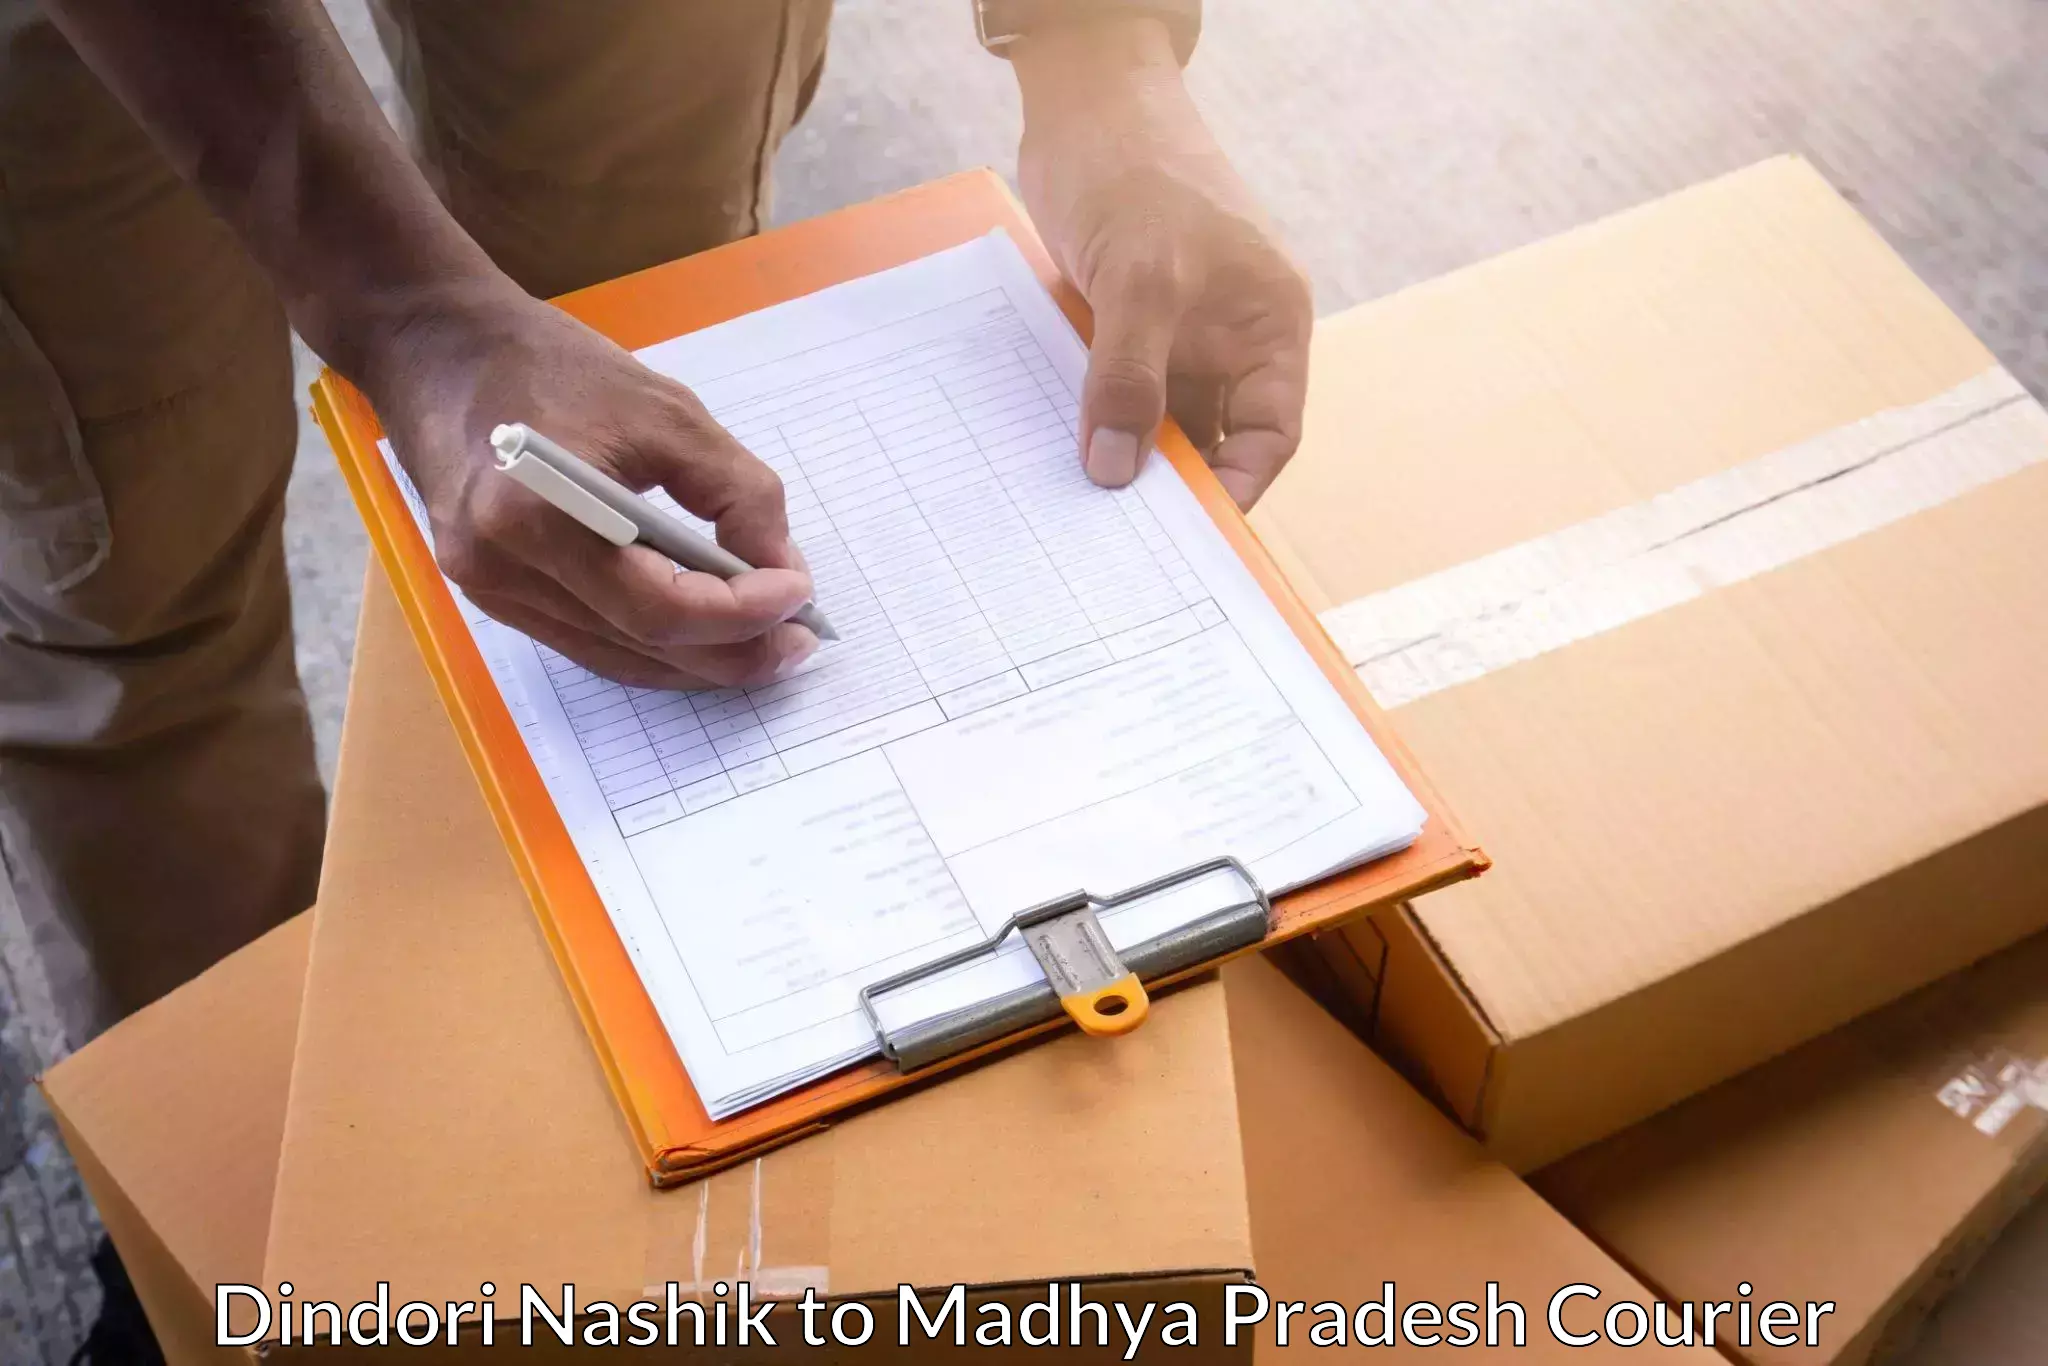 Flexible parcel services Dindori Nashik to Agar